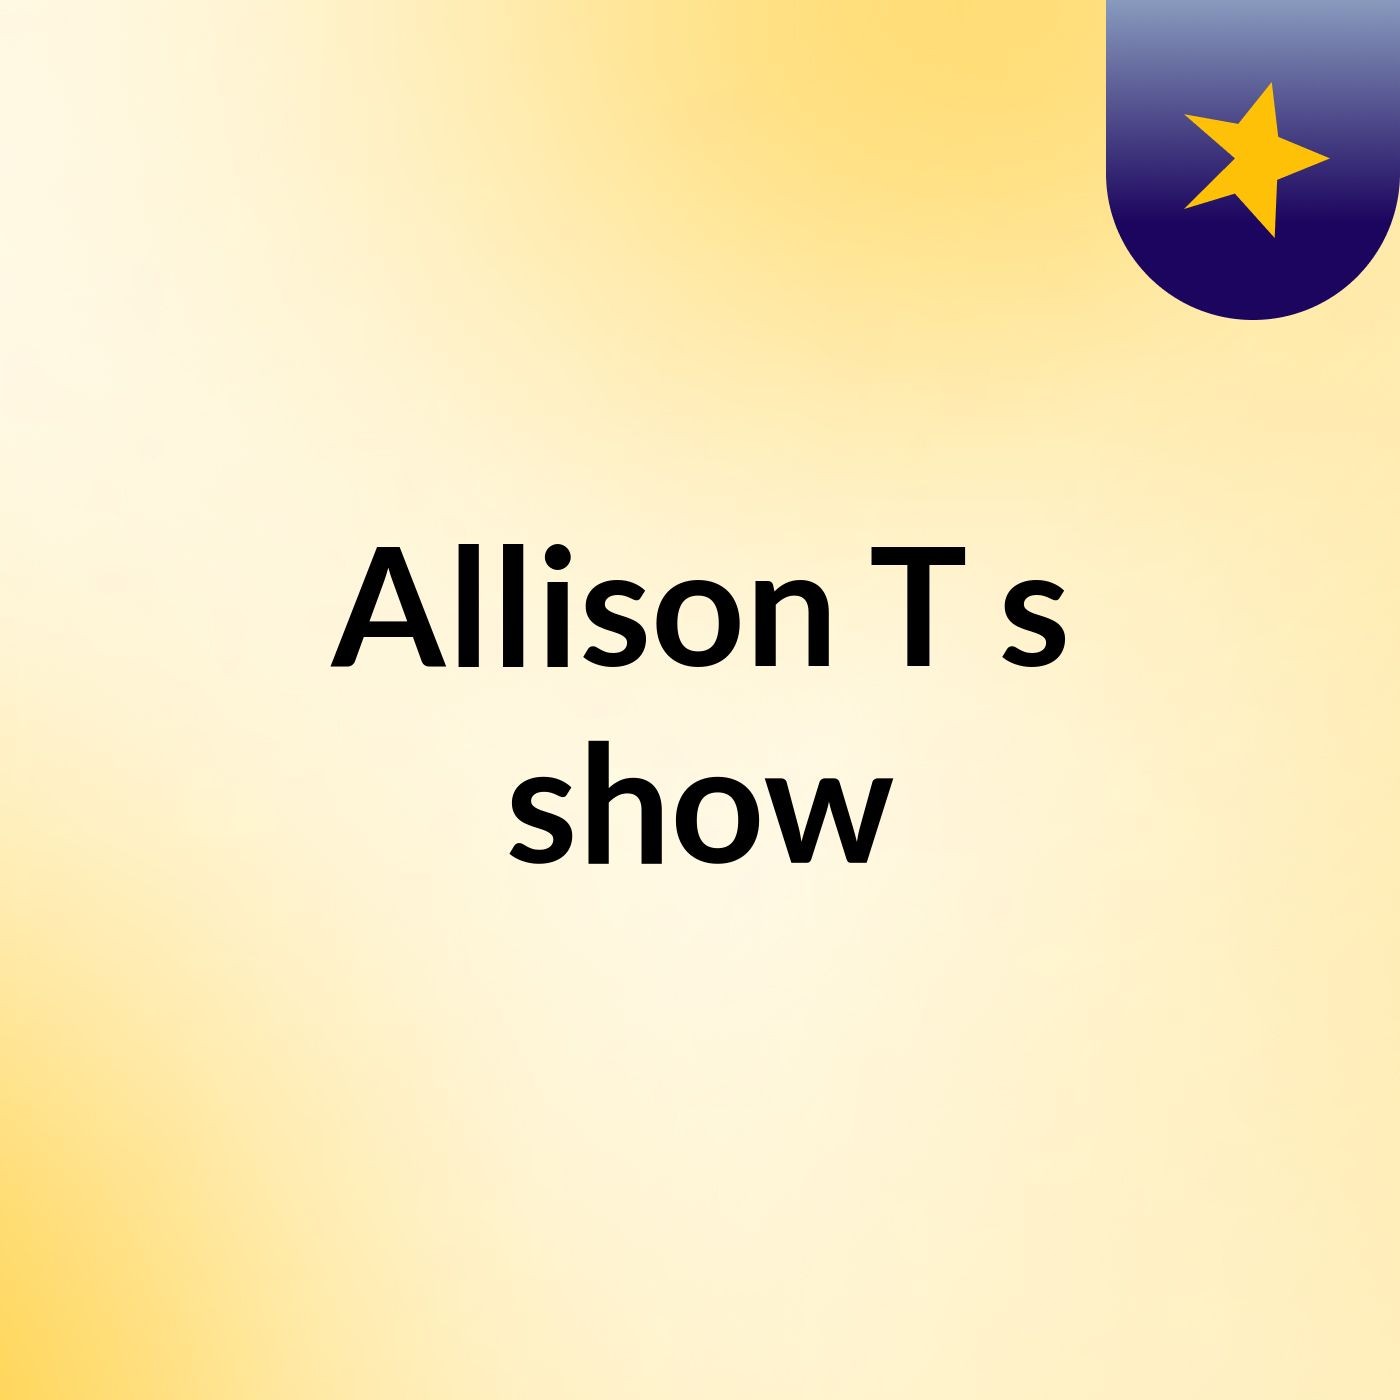 Allison T's show